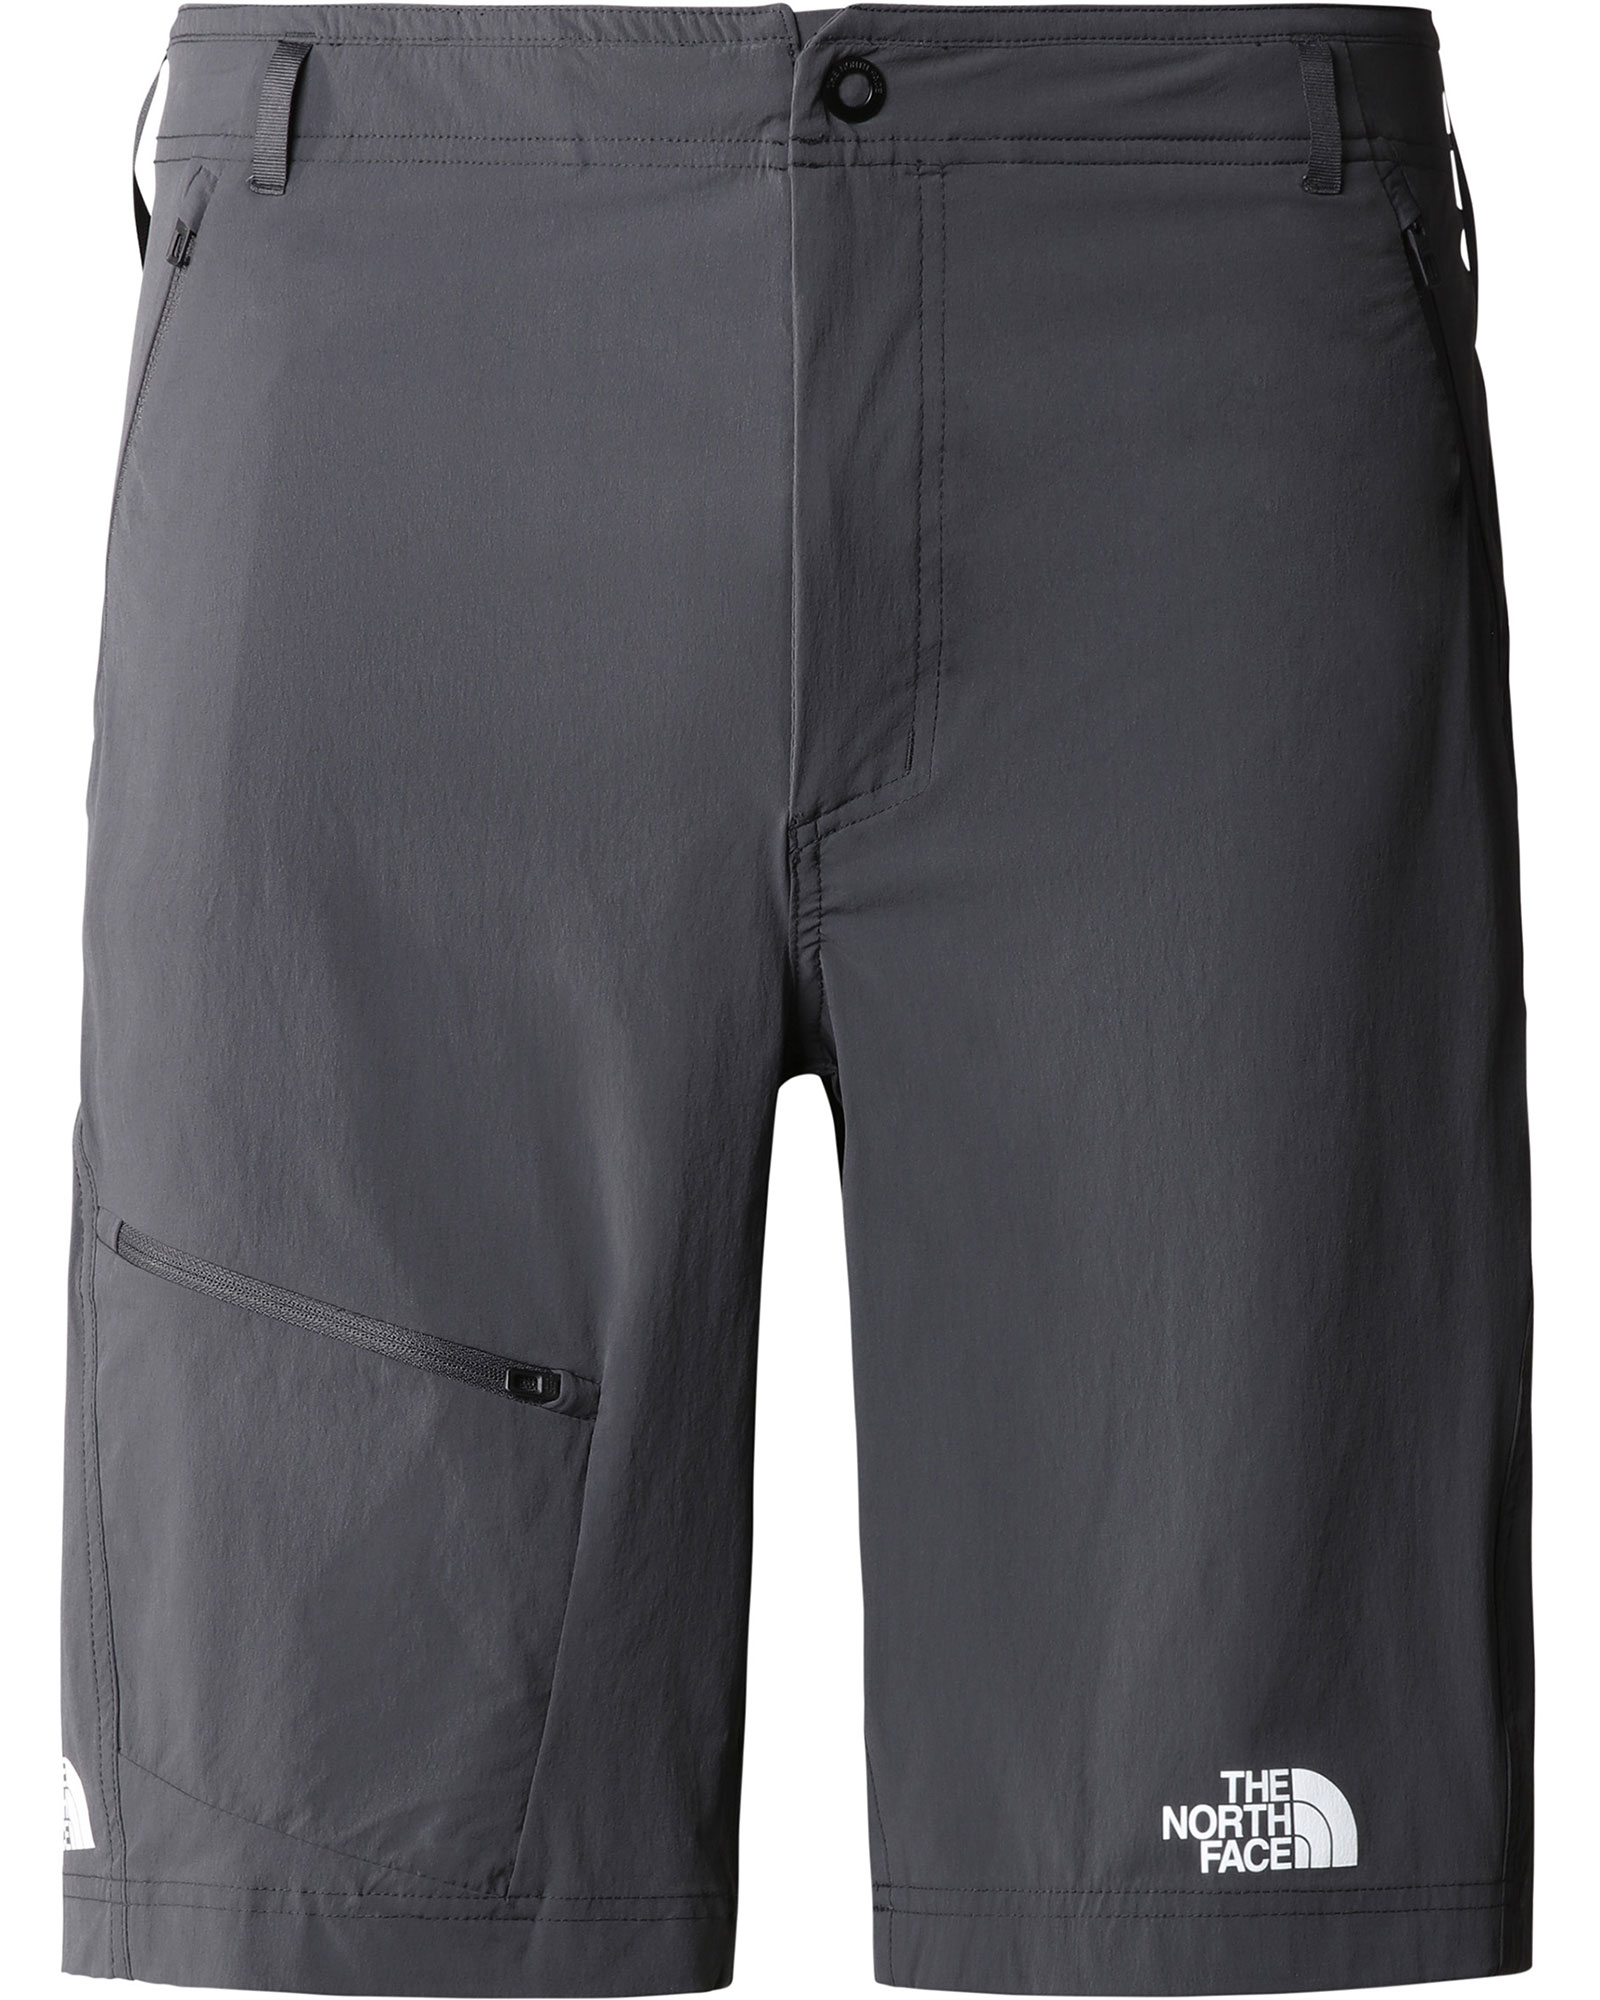 The North Face Men’s Speedlight Slim Tapered Shorts - Asphalt Grey EU 36